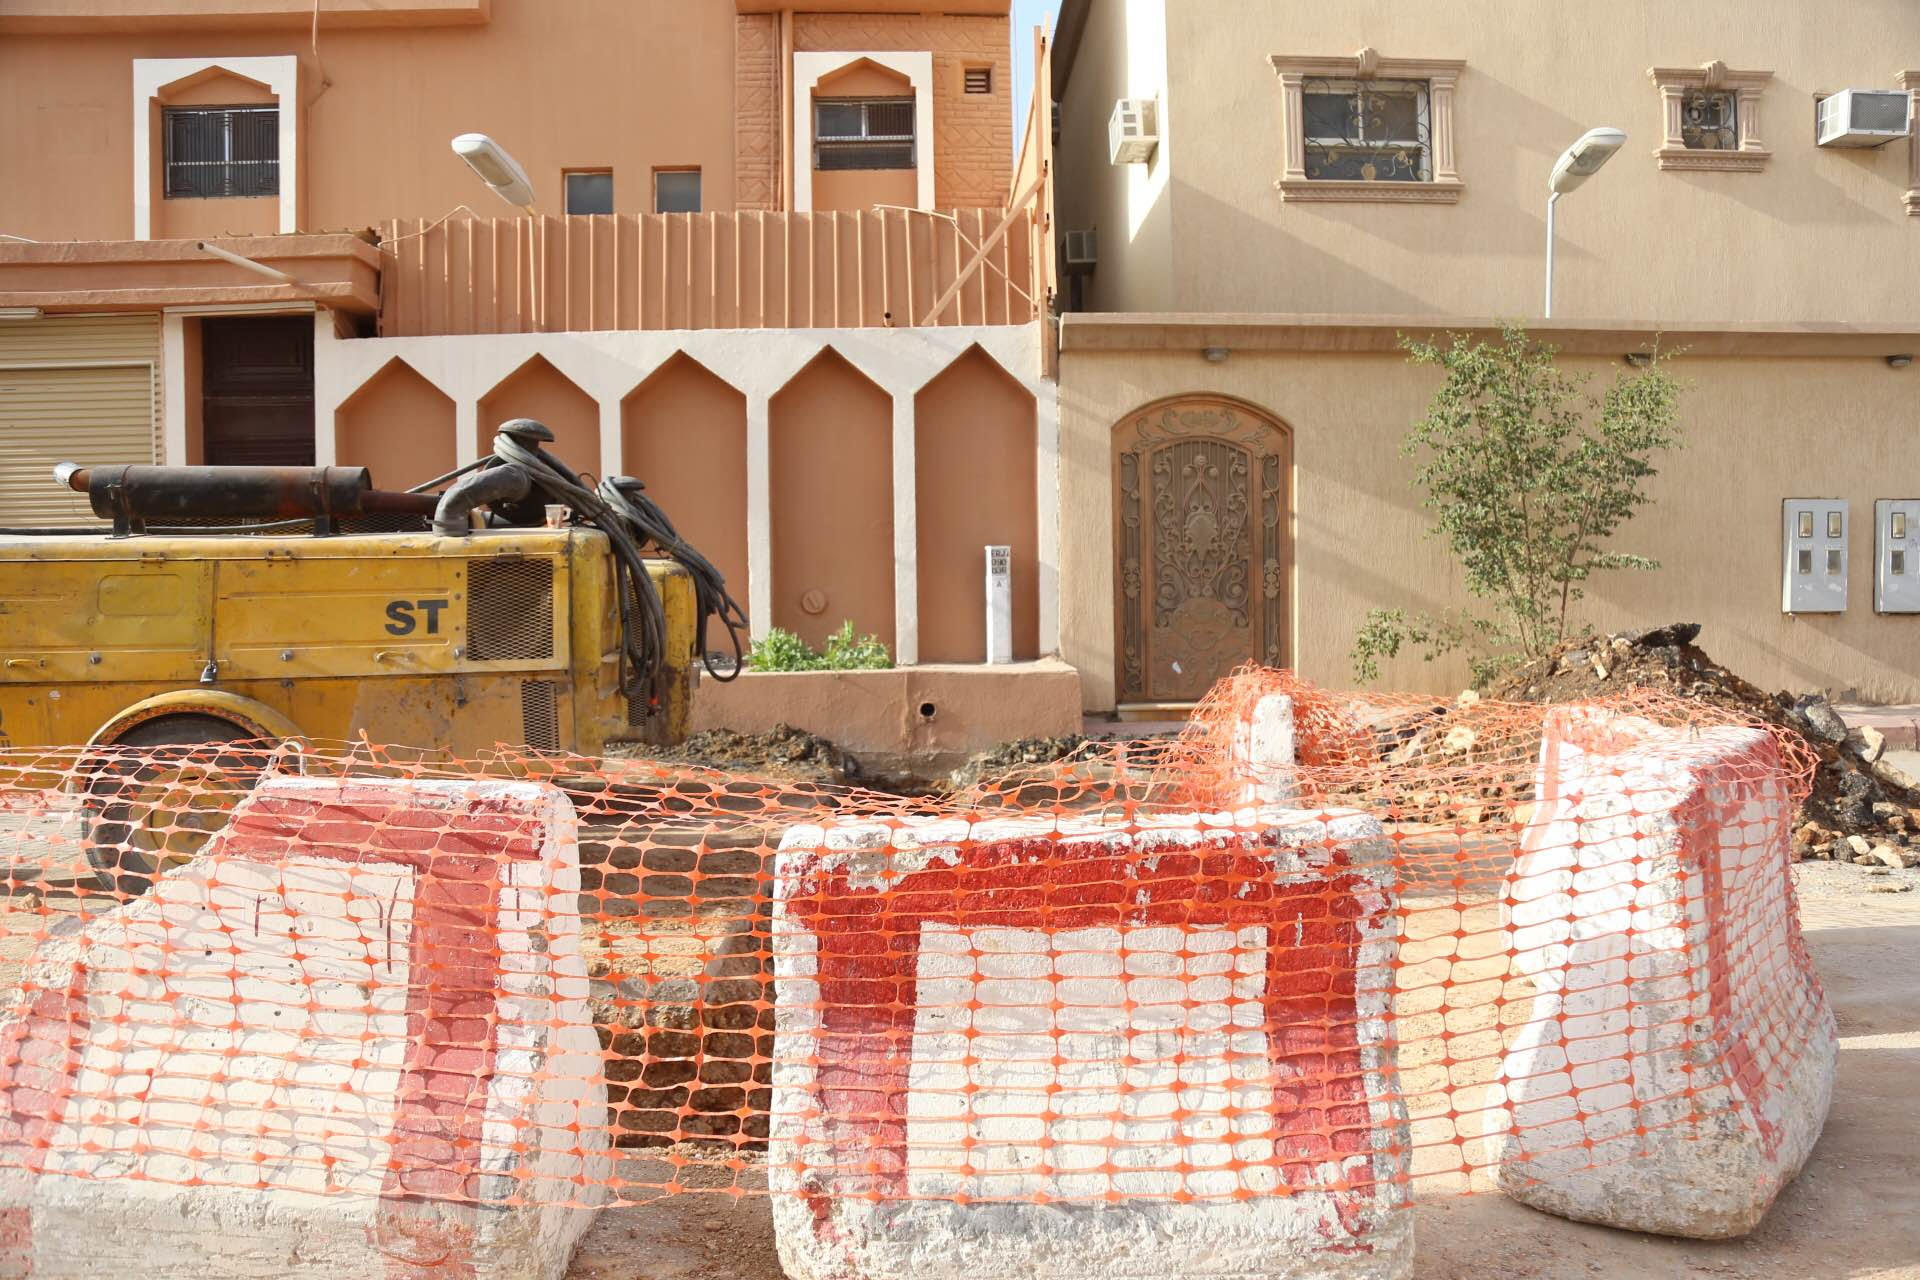 مواطنون بعريجاء #الرياض : تمديدات الصرف تمر بجوارنا.. والشركة تتجاهلنا